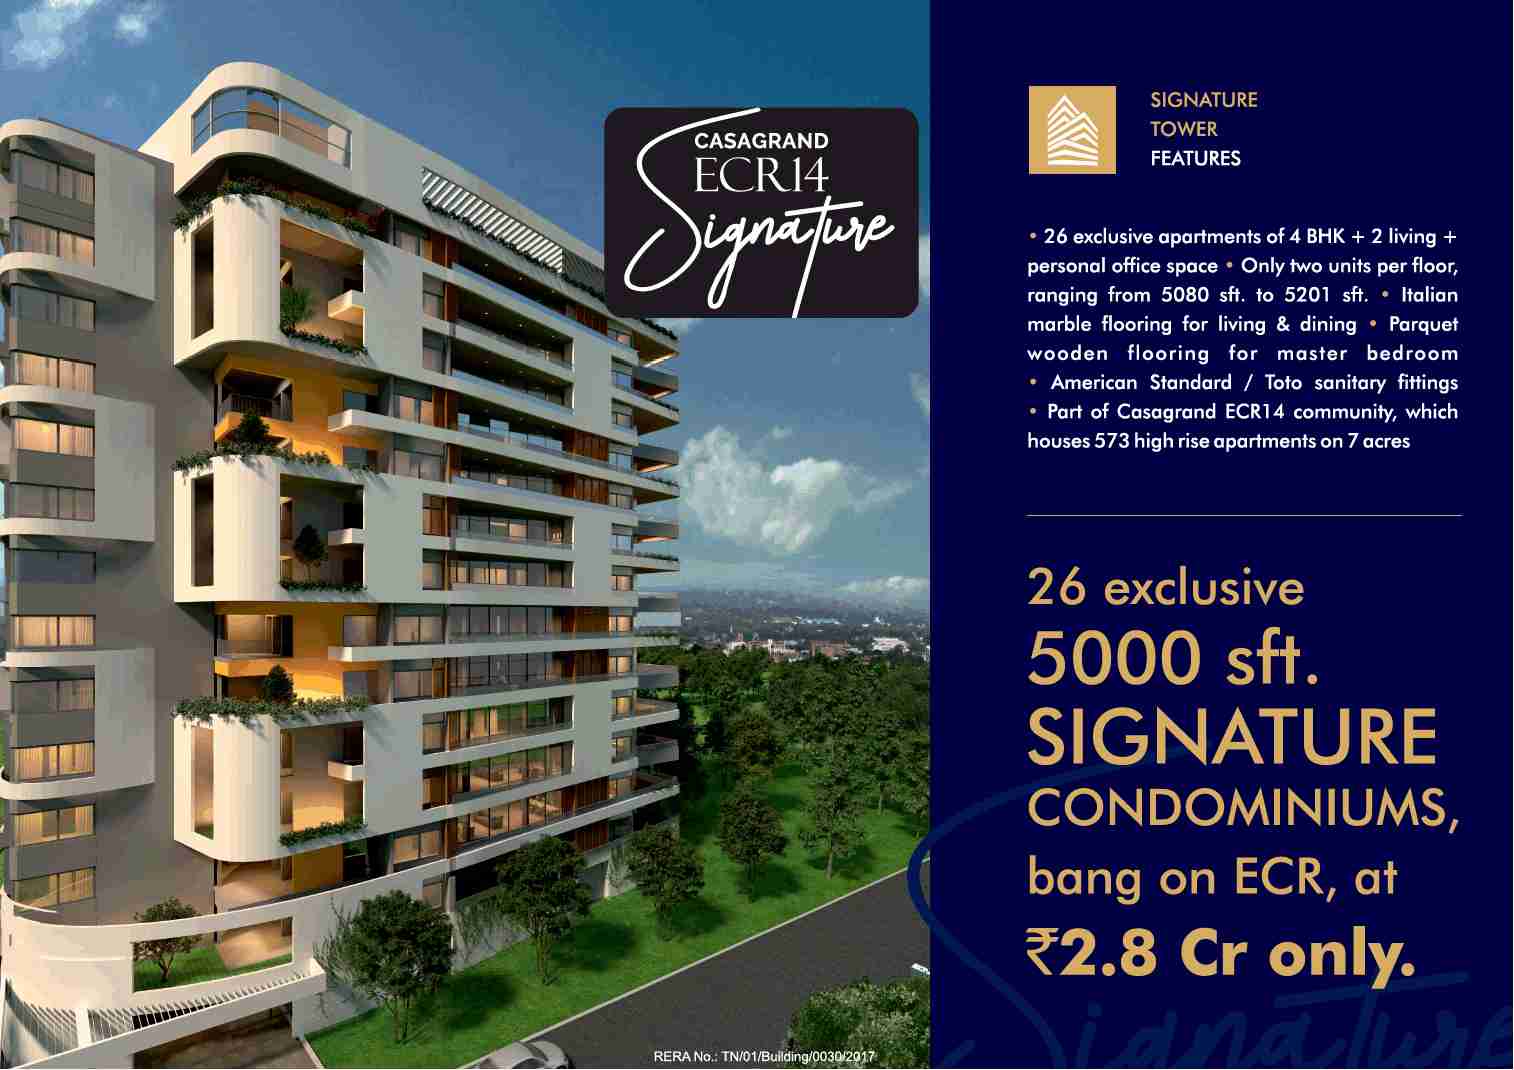 Book exclusive signature condominiums at Casagrand ECR 14 in Chennai Update